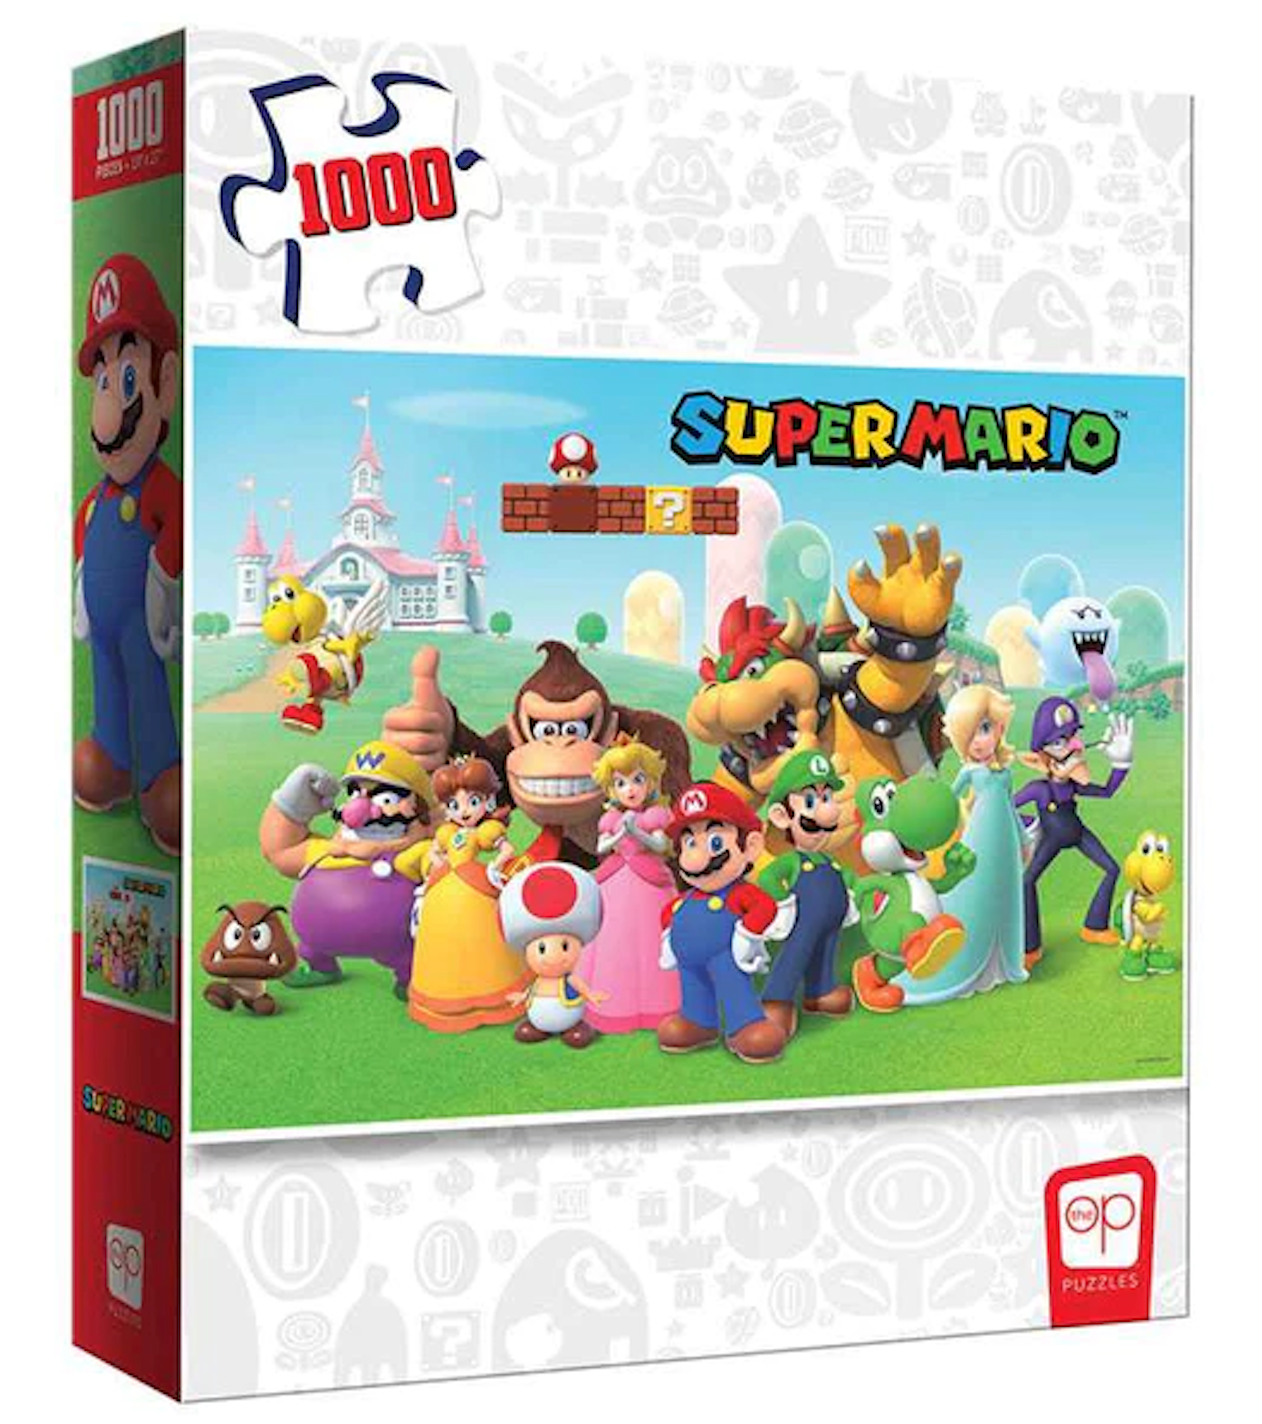 Super Mario - Mushroom Kingdom Puzzle (1000 pc)